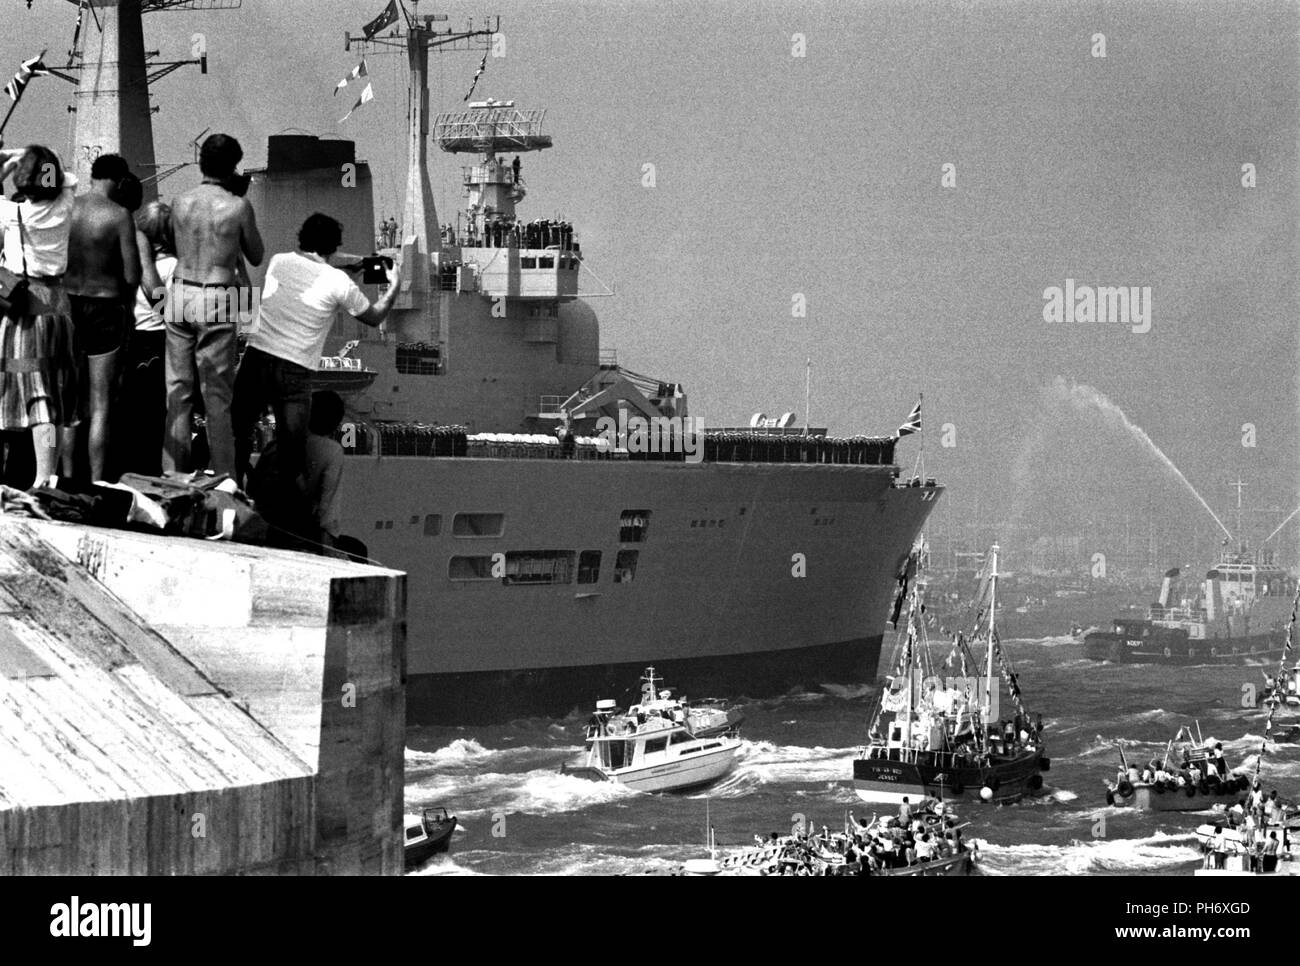 AJAXNETPHOTO. SEP 17th, 1982. PORTSMOUTH, ANGLETERRE - RETOURS - LE TRANSPORTEUR HMS INVINCIBLE DE RETOURNER À PORTSMOUTH ACCOMPAGNÉ D'une flottille de sympathisants À LA FIN DE SON DEVOIR DE L'ATLANTIQUE SUD AU COURS DE LA CAMPAGNE des Malouines. PHOTO:JONATHAN EASTLAND/AJAX REF:820917 14 Banque D'Images